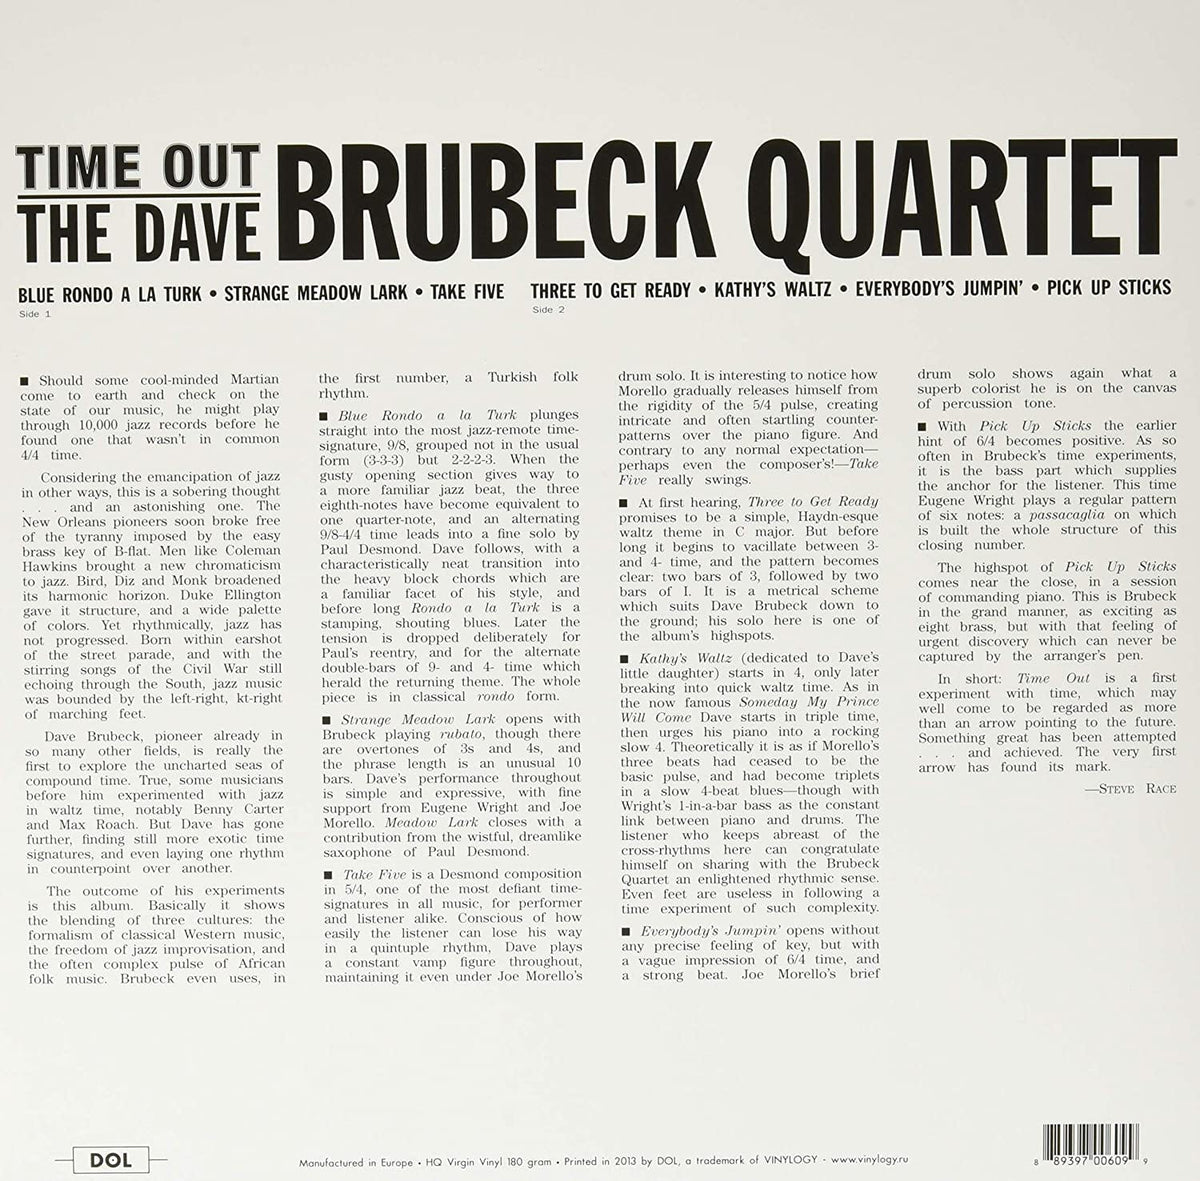 THE DAVE BRUBECK QUARTET - TIME OUT [COLOUR VINYL]